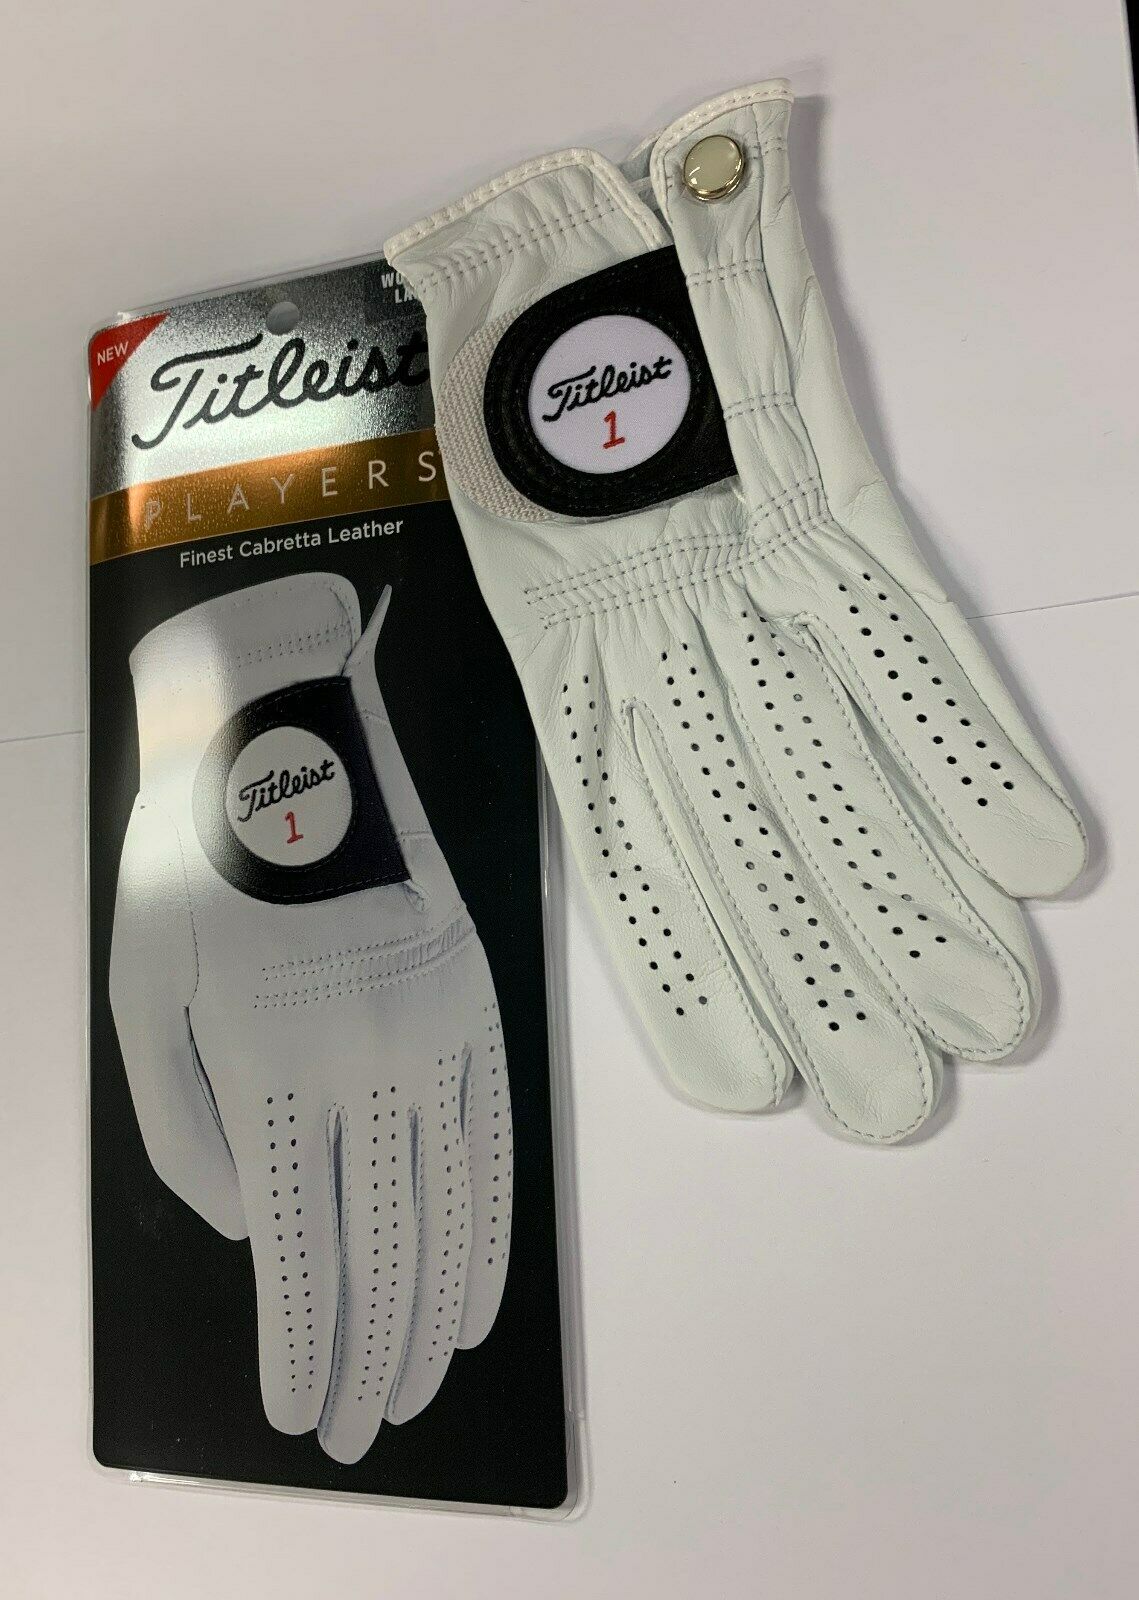 2021 Titleist Players Golf Gloves Men & Women - Choose A Size! - Rh & Lh - New